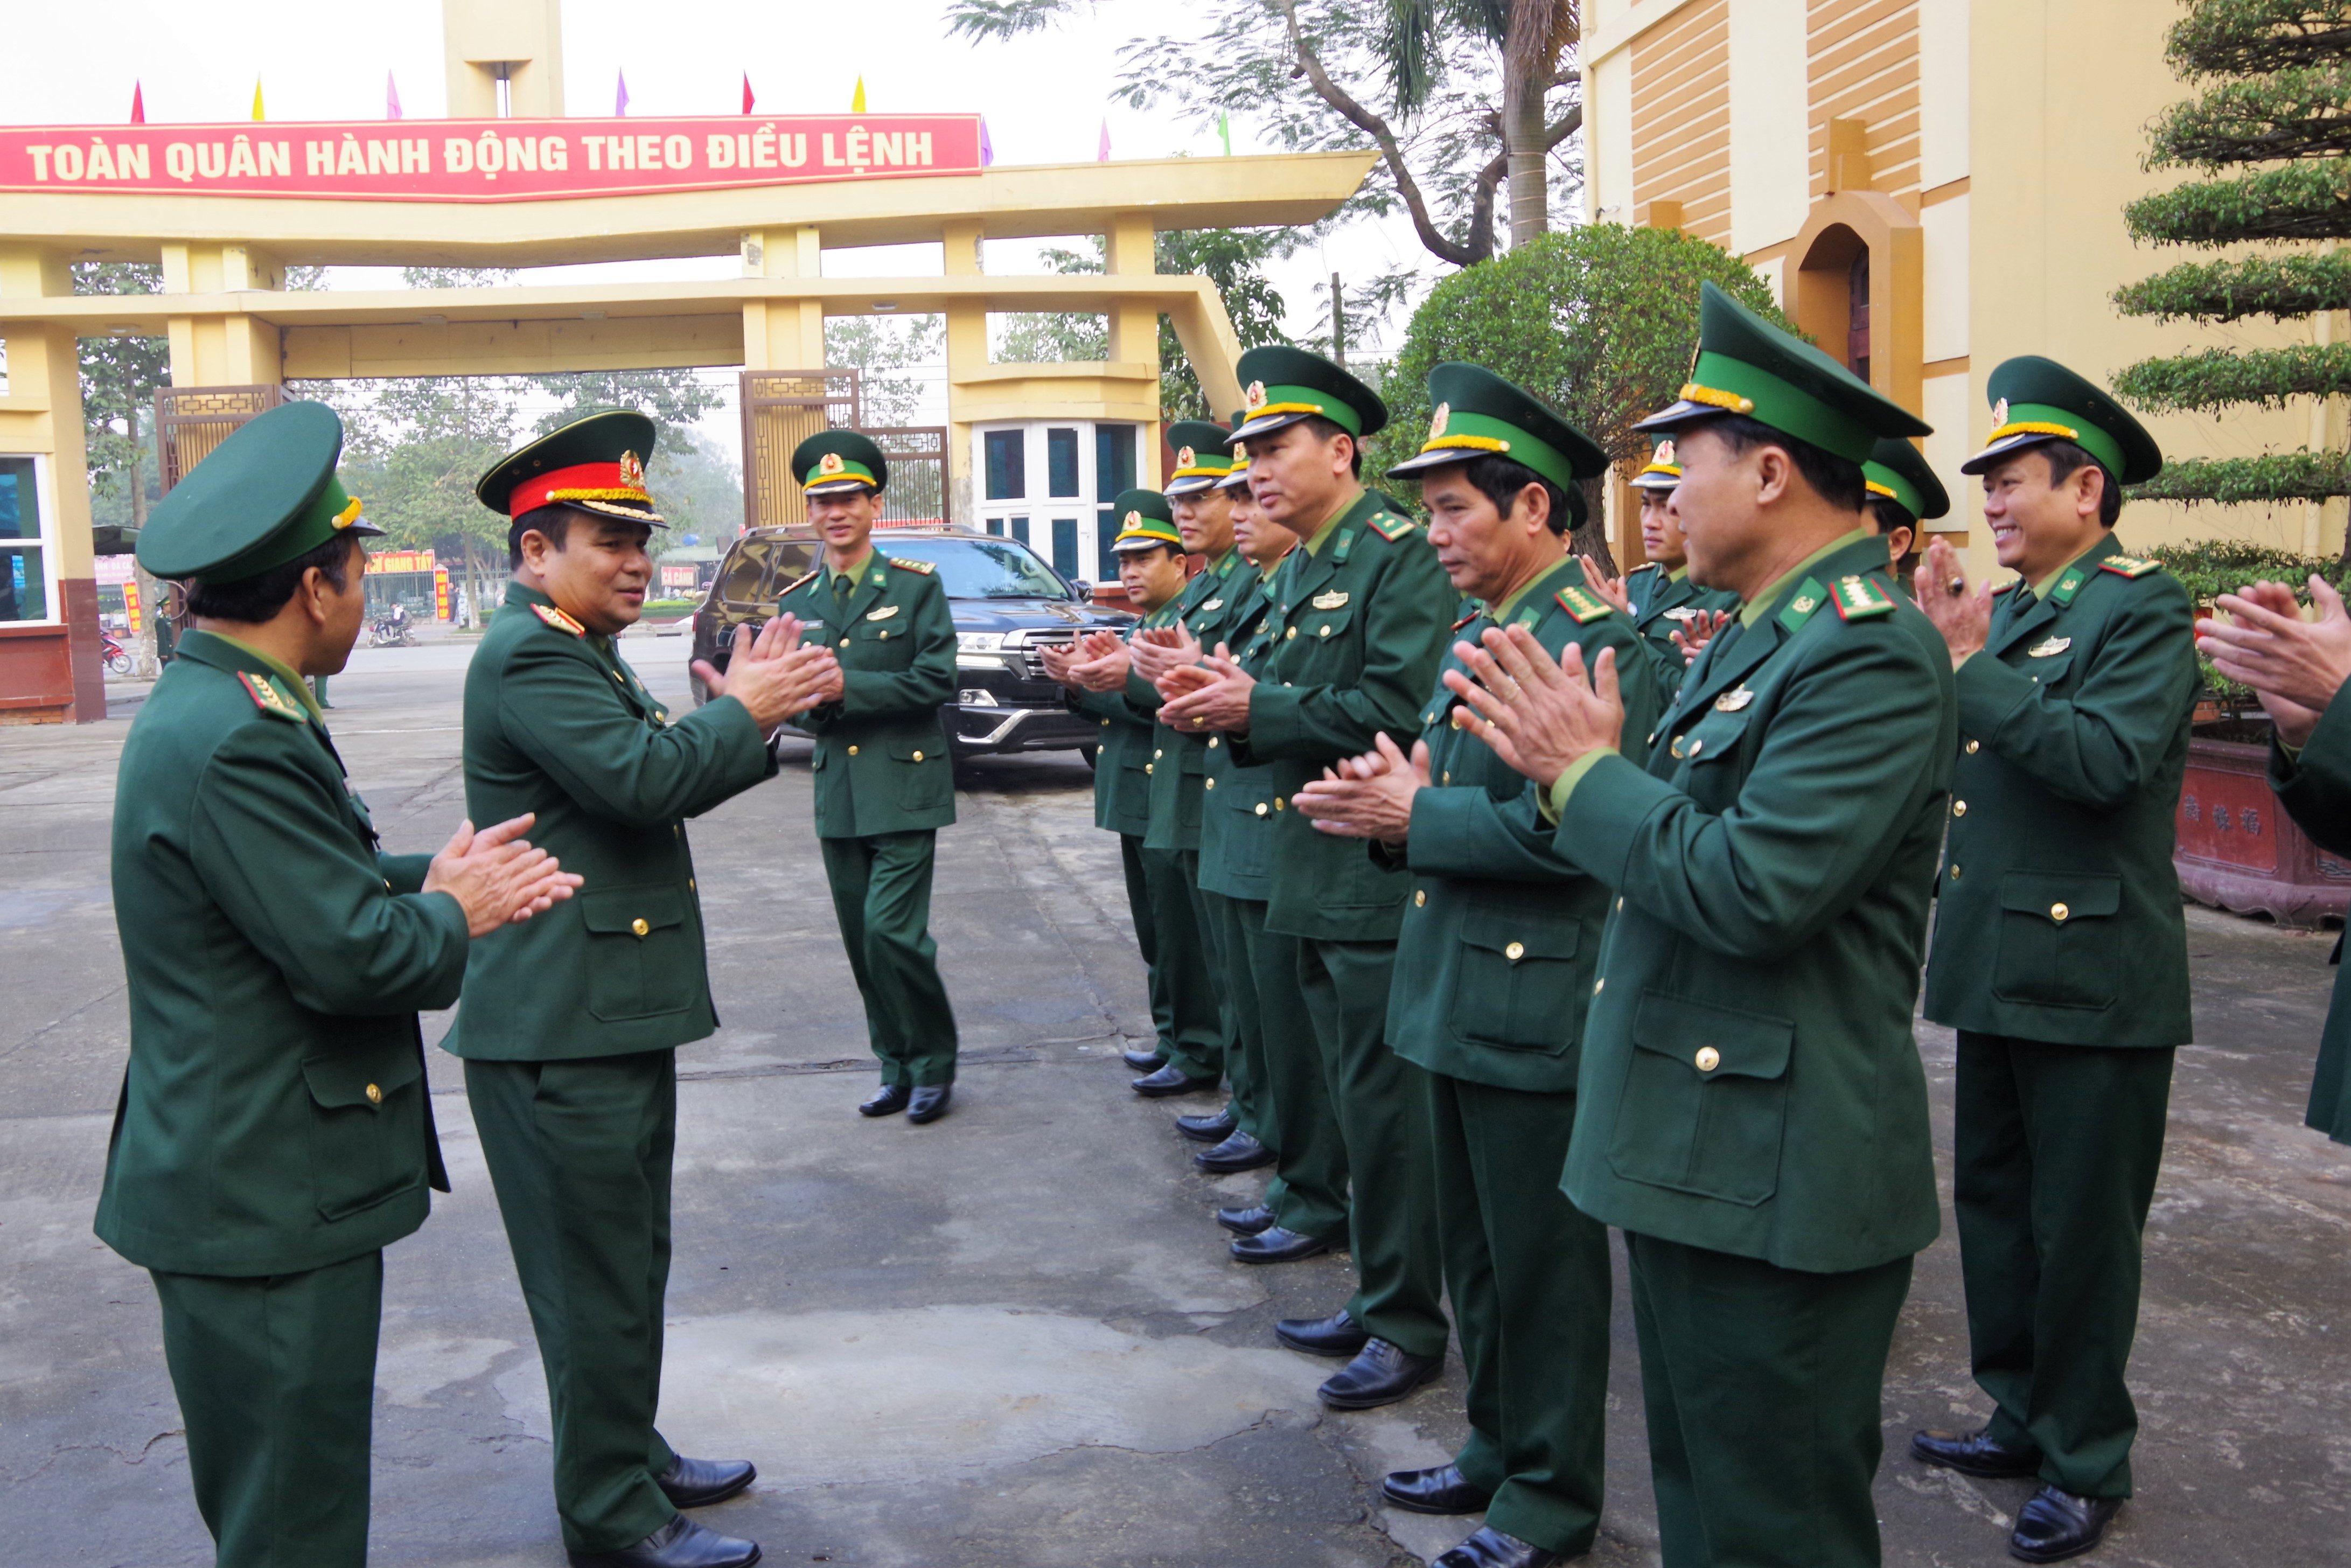 Thượng tướng Lê Chiêm, Thứ trưởng Bộ Quốc phòng, Trưởng Ban chỉ chỉ đạo 1389 BQP đến kiểm tra tại BĐBP Nghệ An. Ảnh: Phương Linh